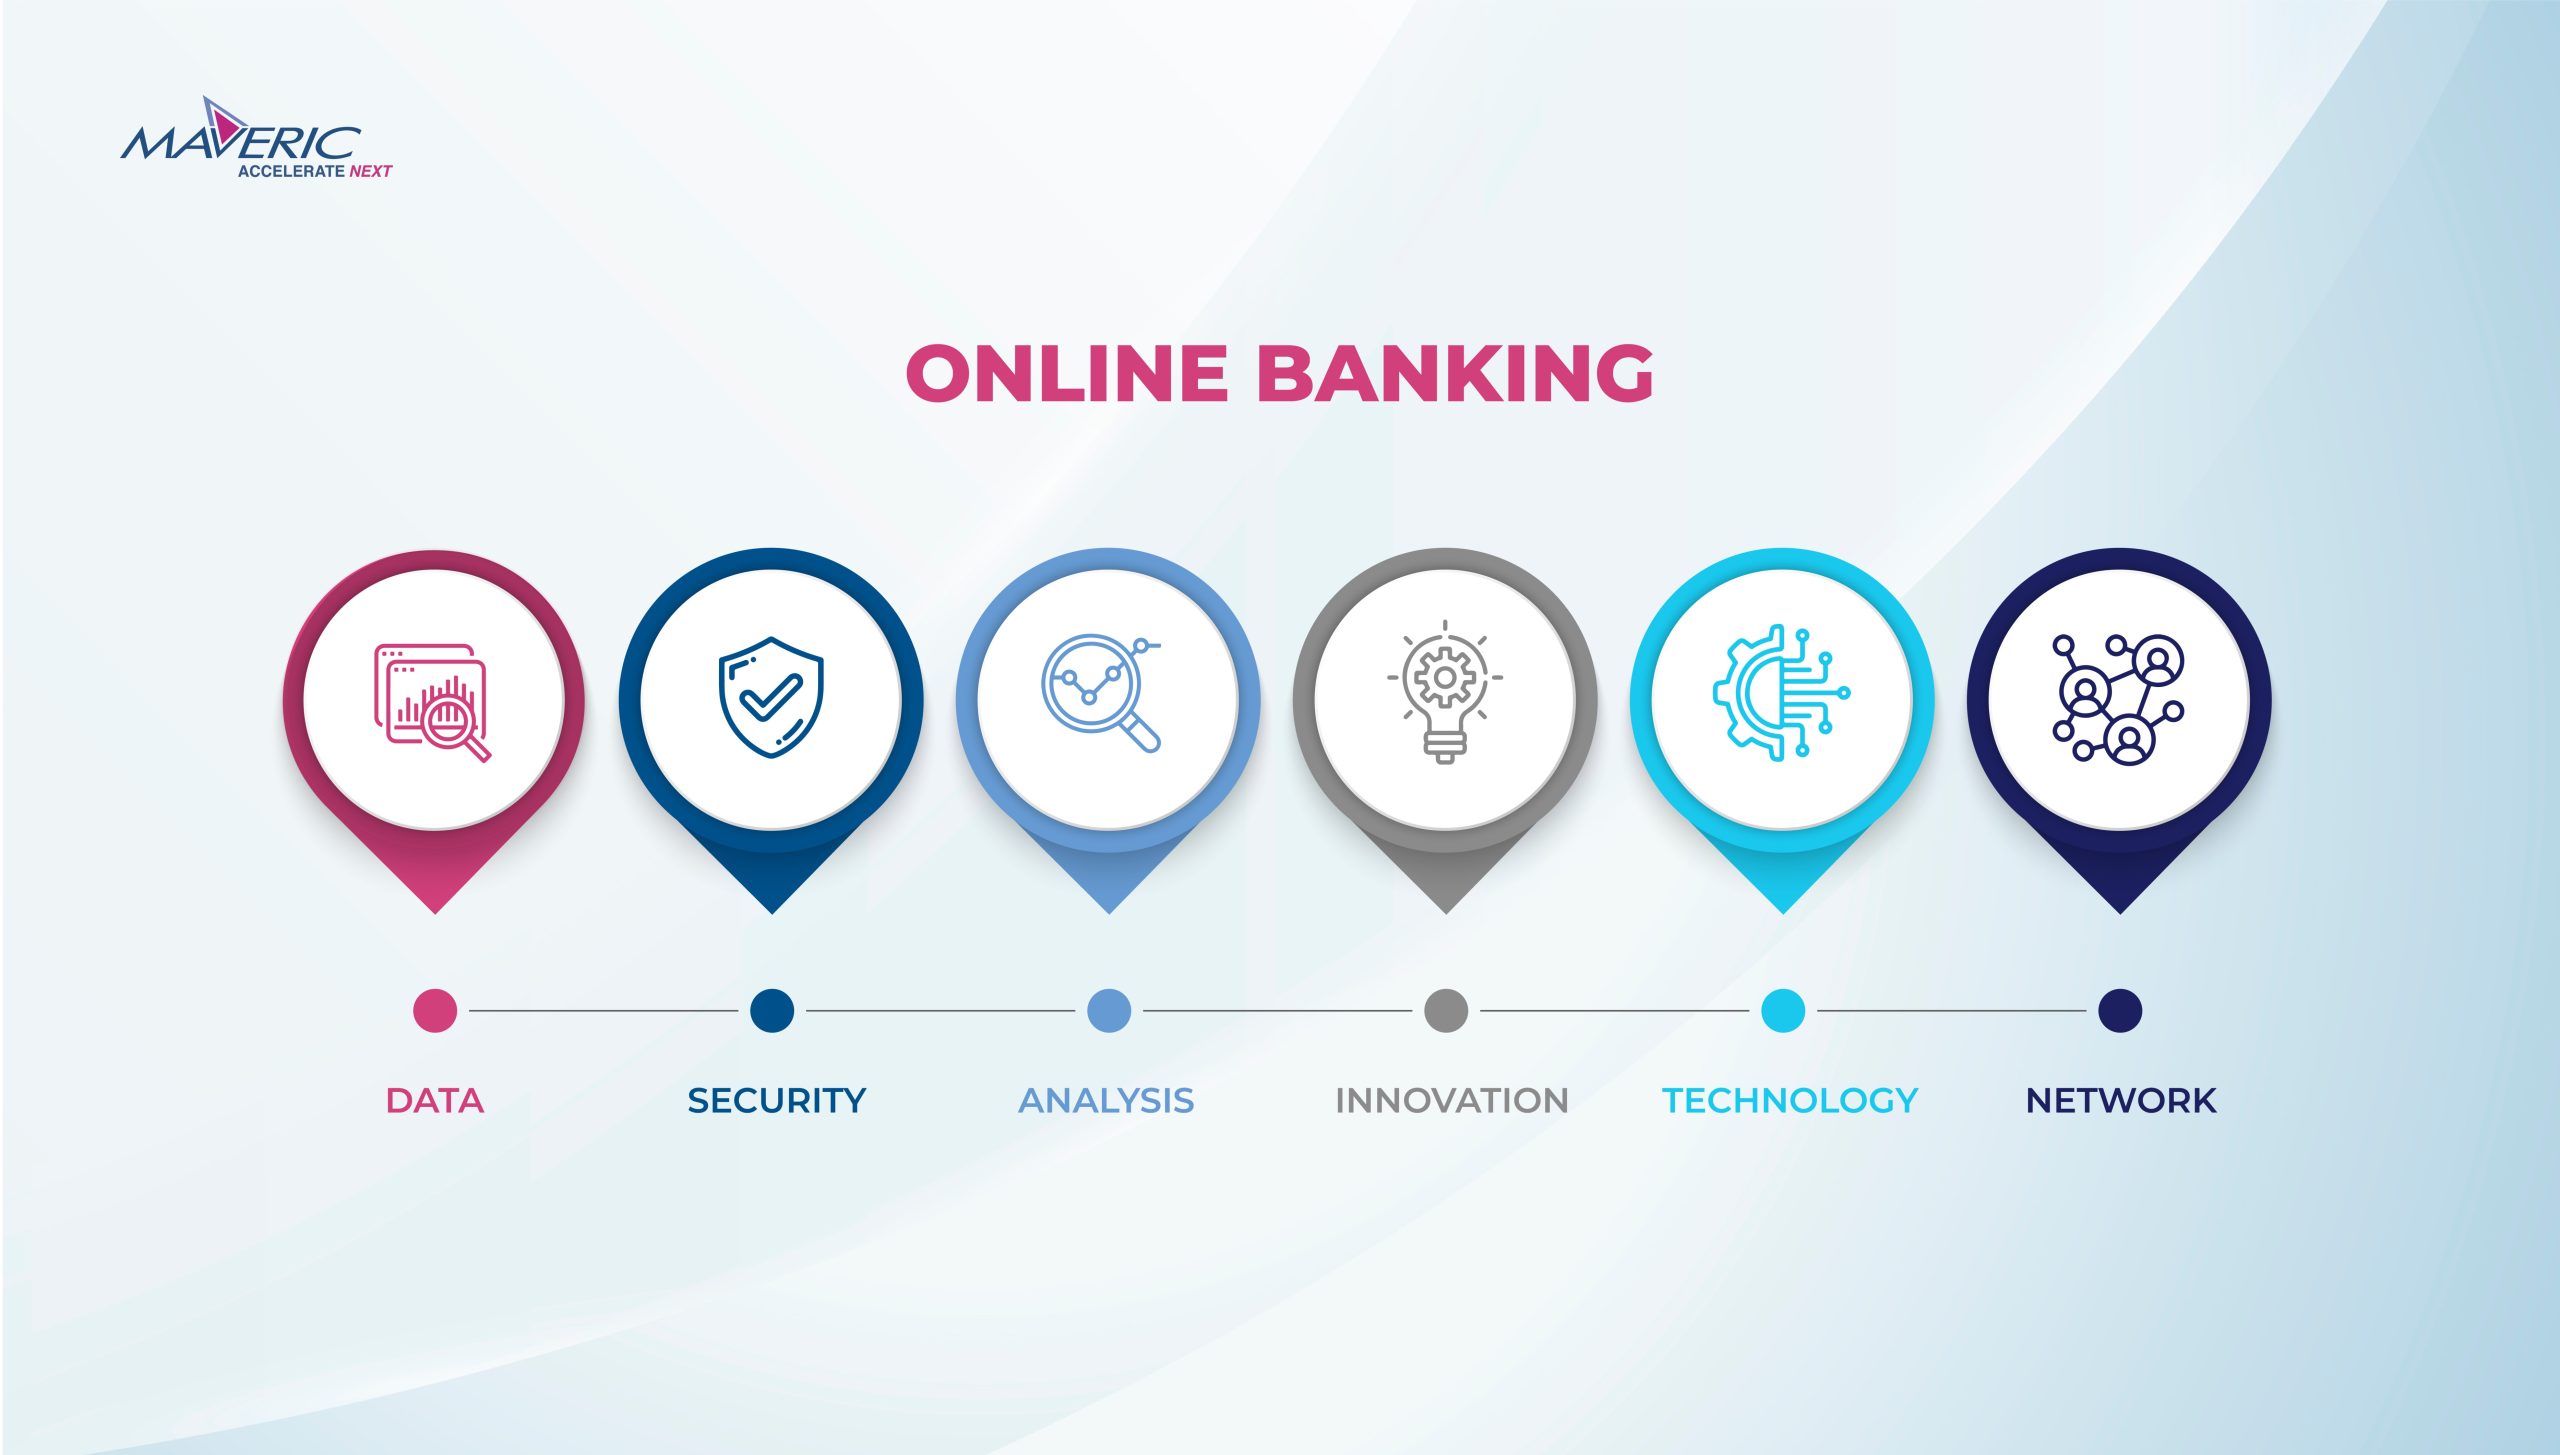 Core Banking Transformation Platforms